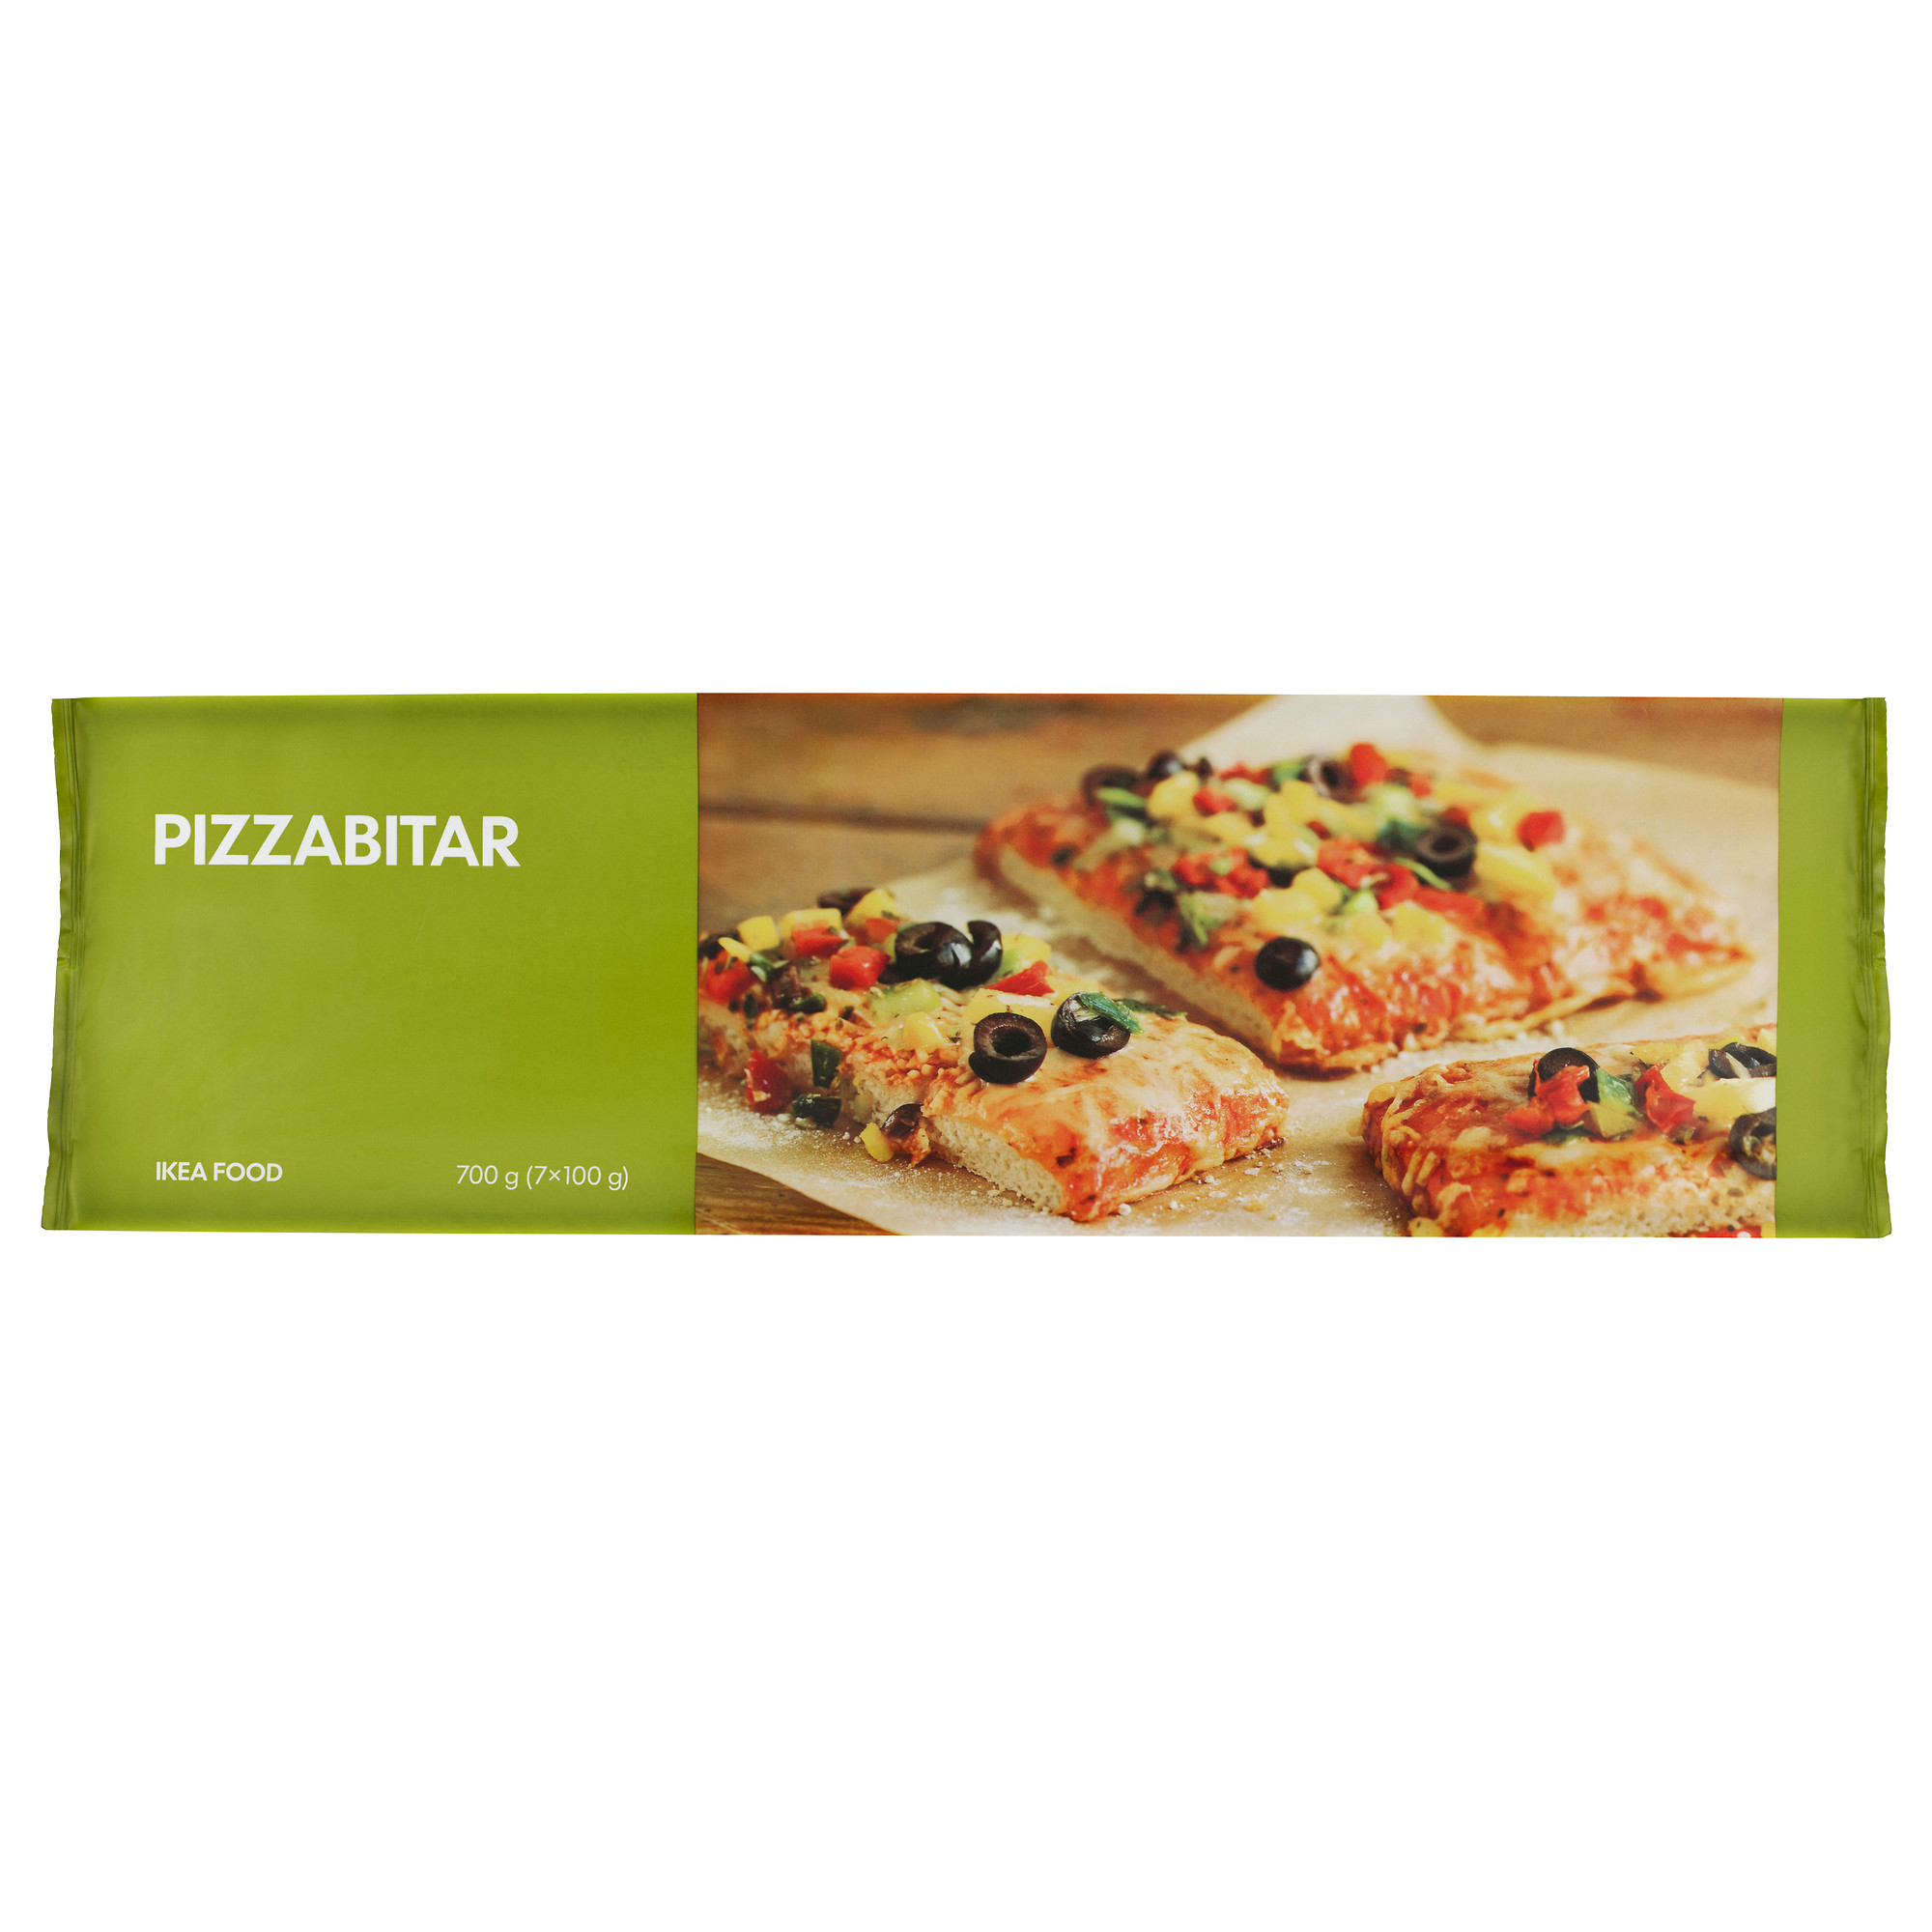 PIZZABITAR pizza slice, vegetarian frozen